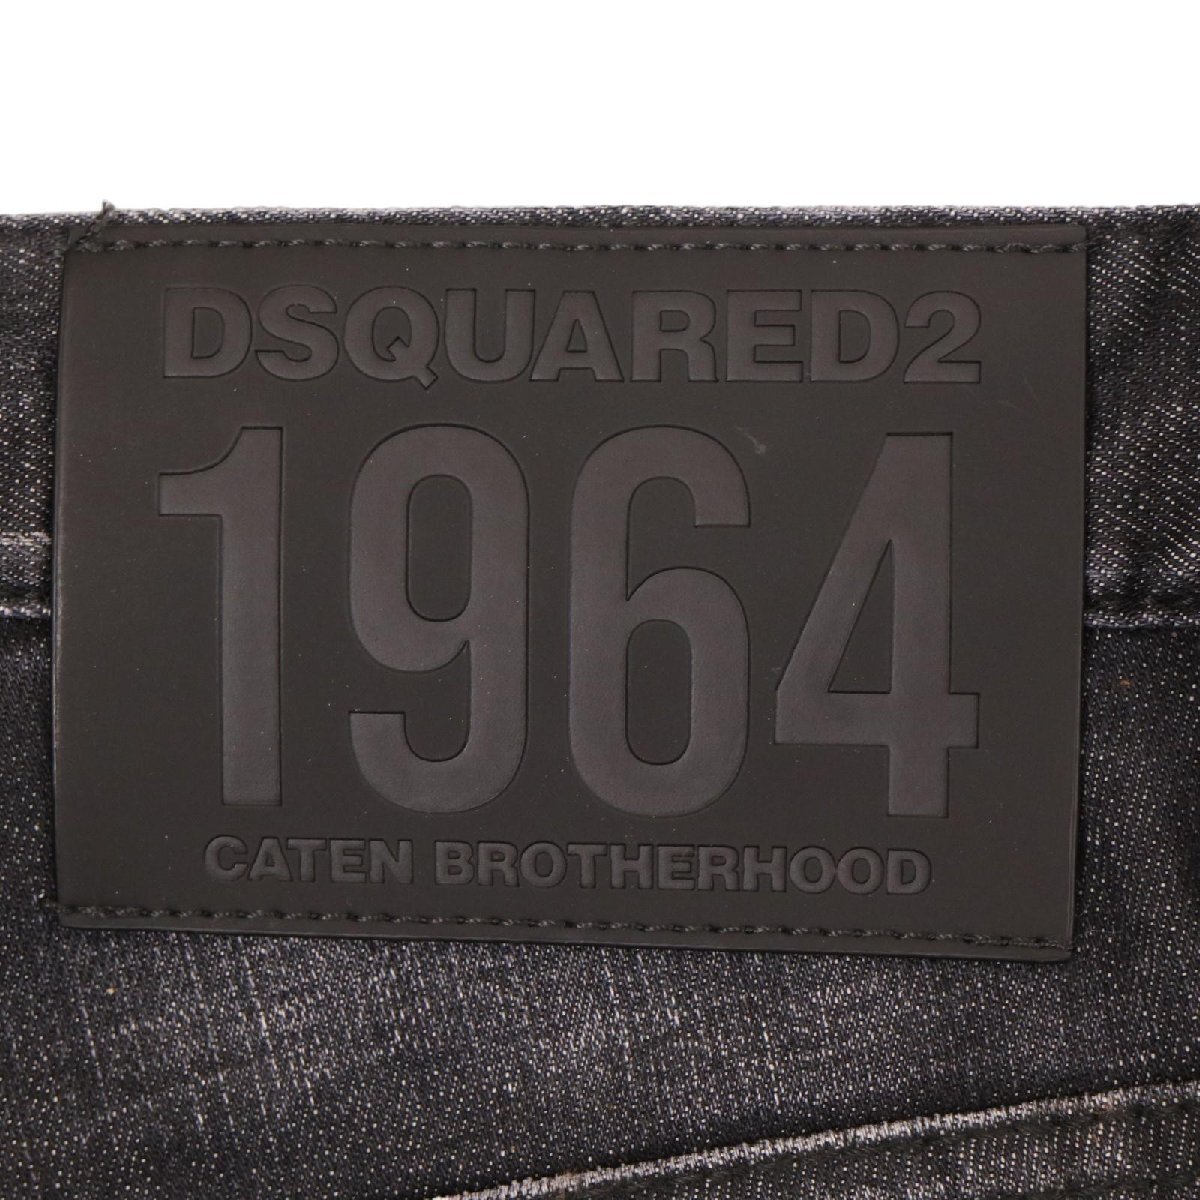 DSQUARED2 ディースクエアード 23年製 チャコール ボタンフライ ダメージ スキニーパンツ ブラック 44 ボトムス コットン メンズ 中古_画像7